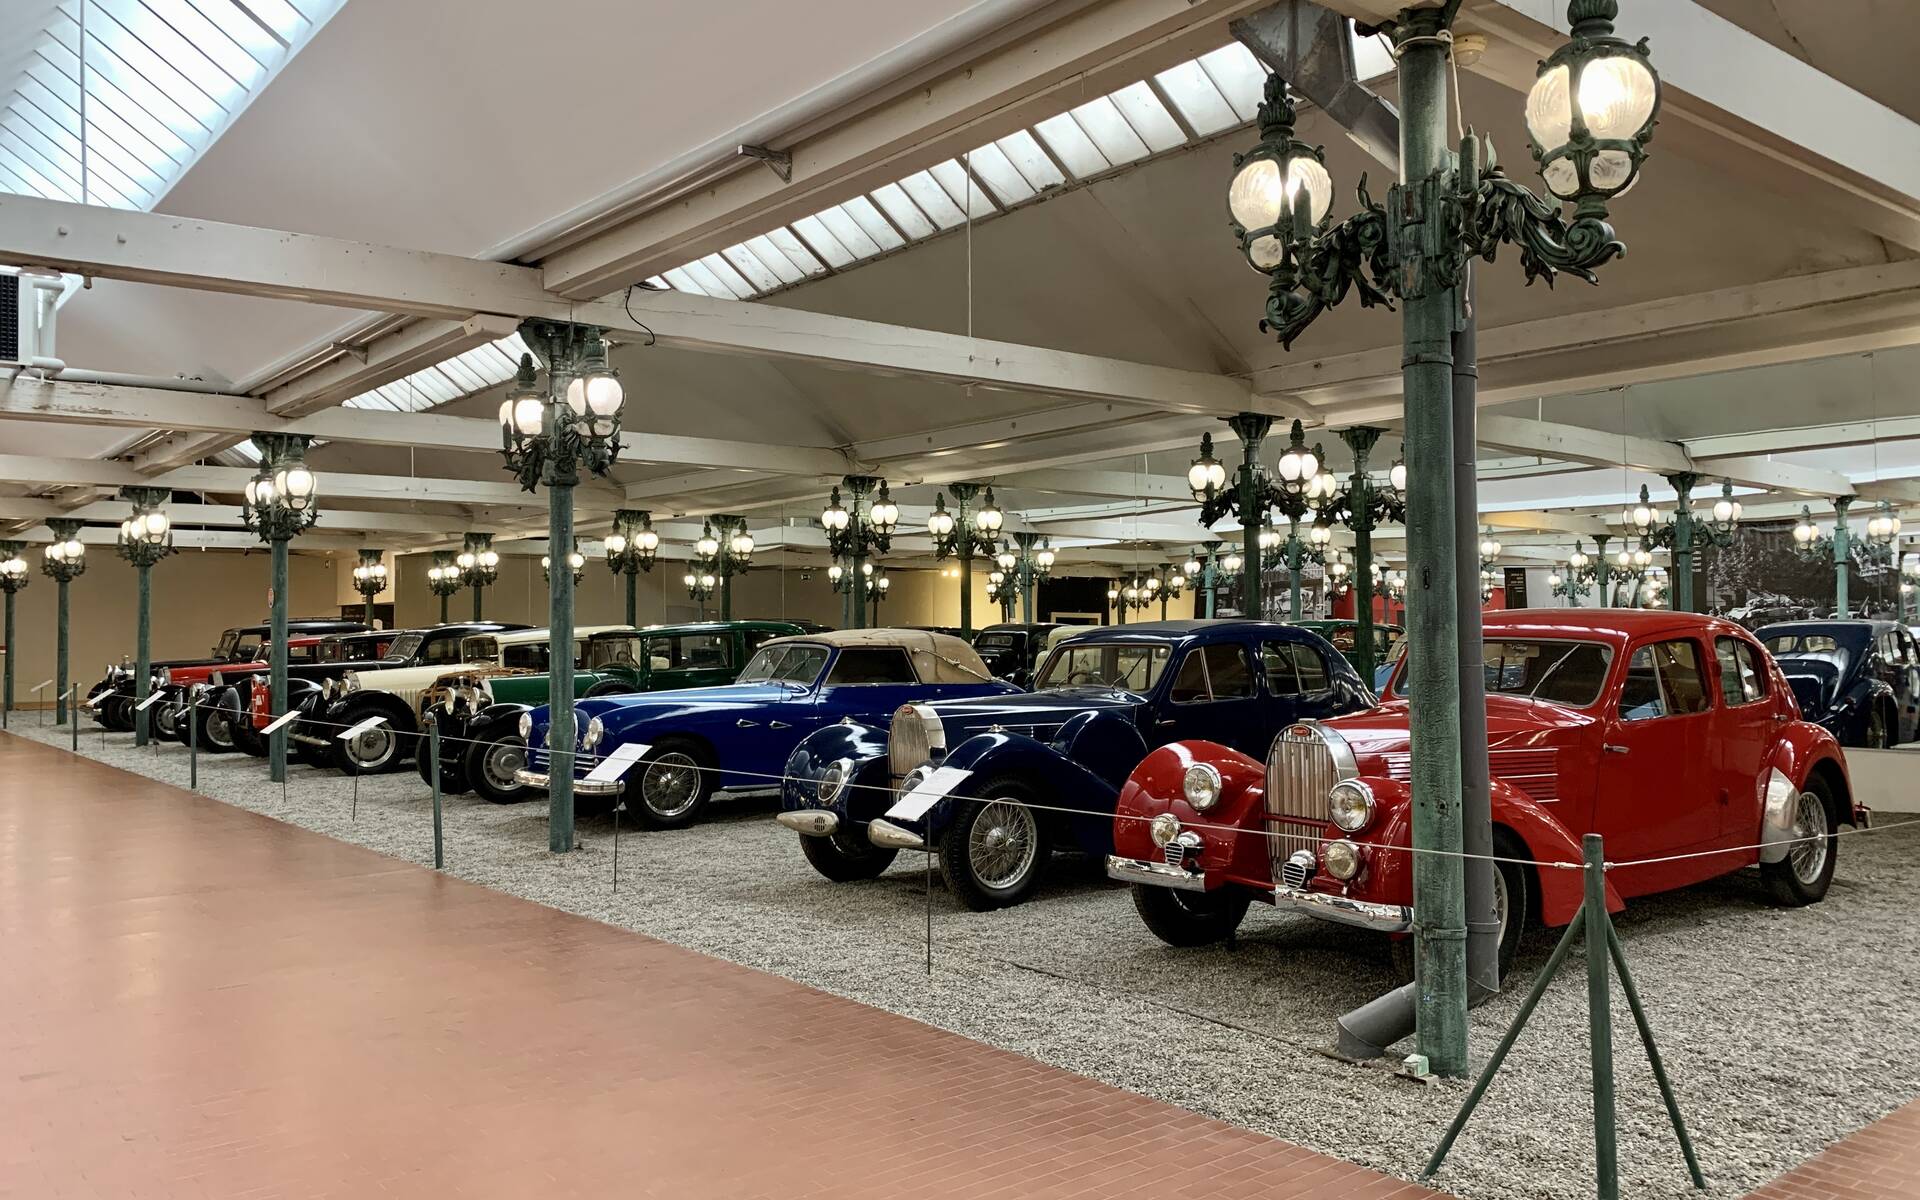 En photos : une centaine de Bugatti réunies dans un même musée 503057-en-photos-des-dizaines-de-bugatti-reunies-dans-un-meme-musee